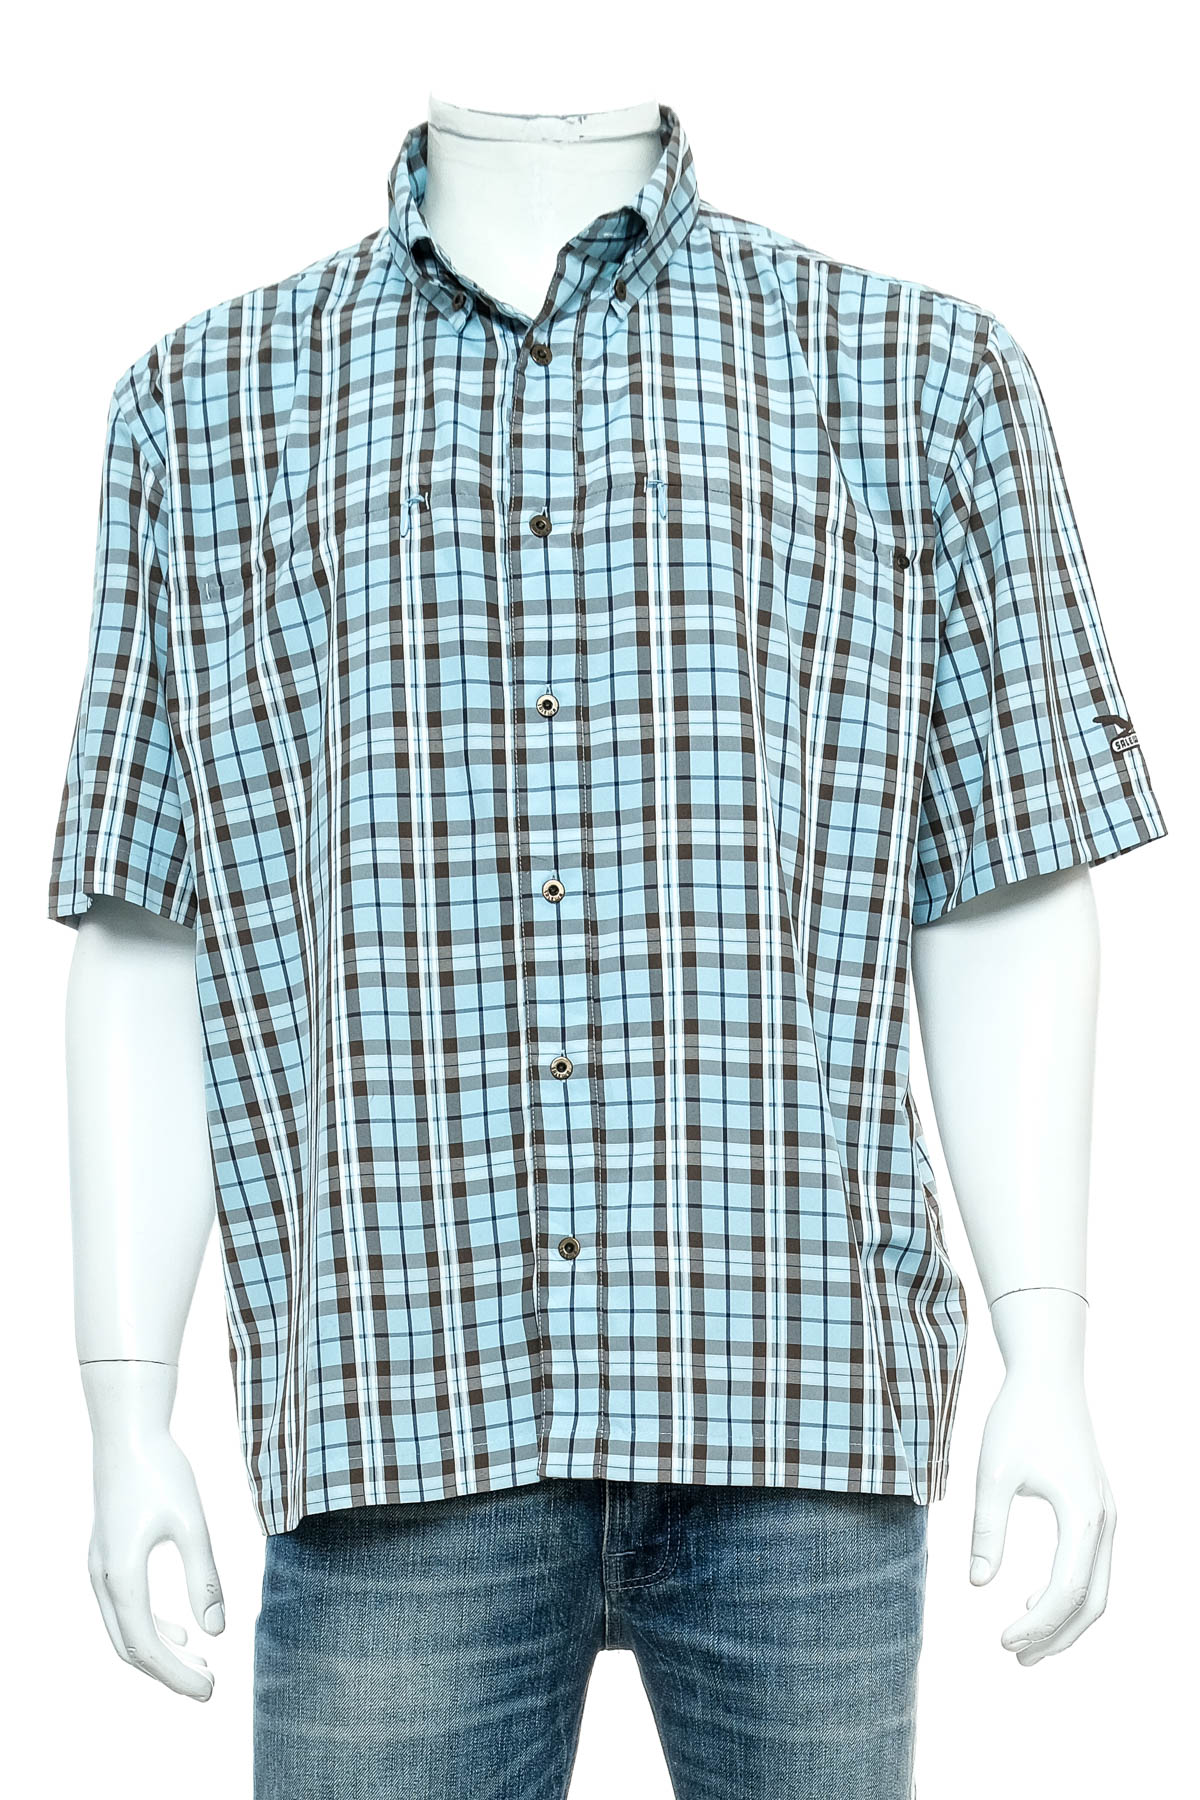 Ανδρικό πουκάμισο - Salewa - 0